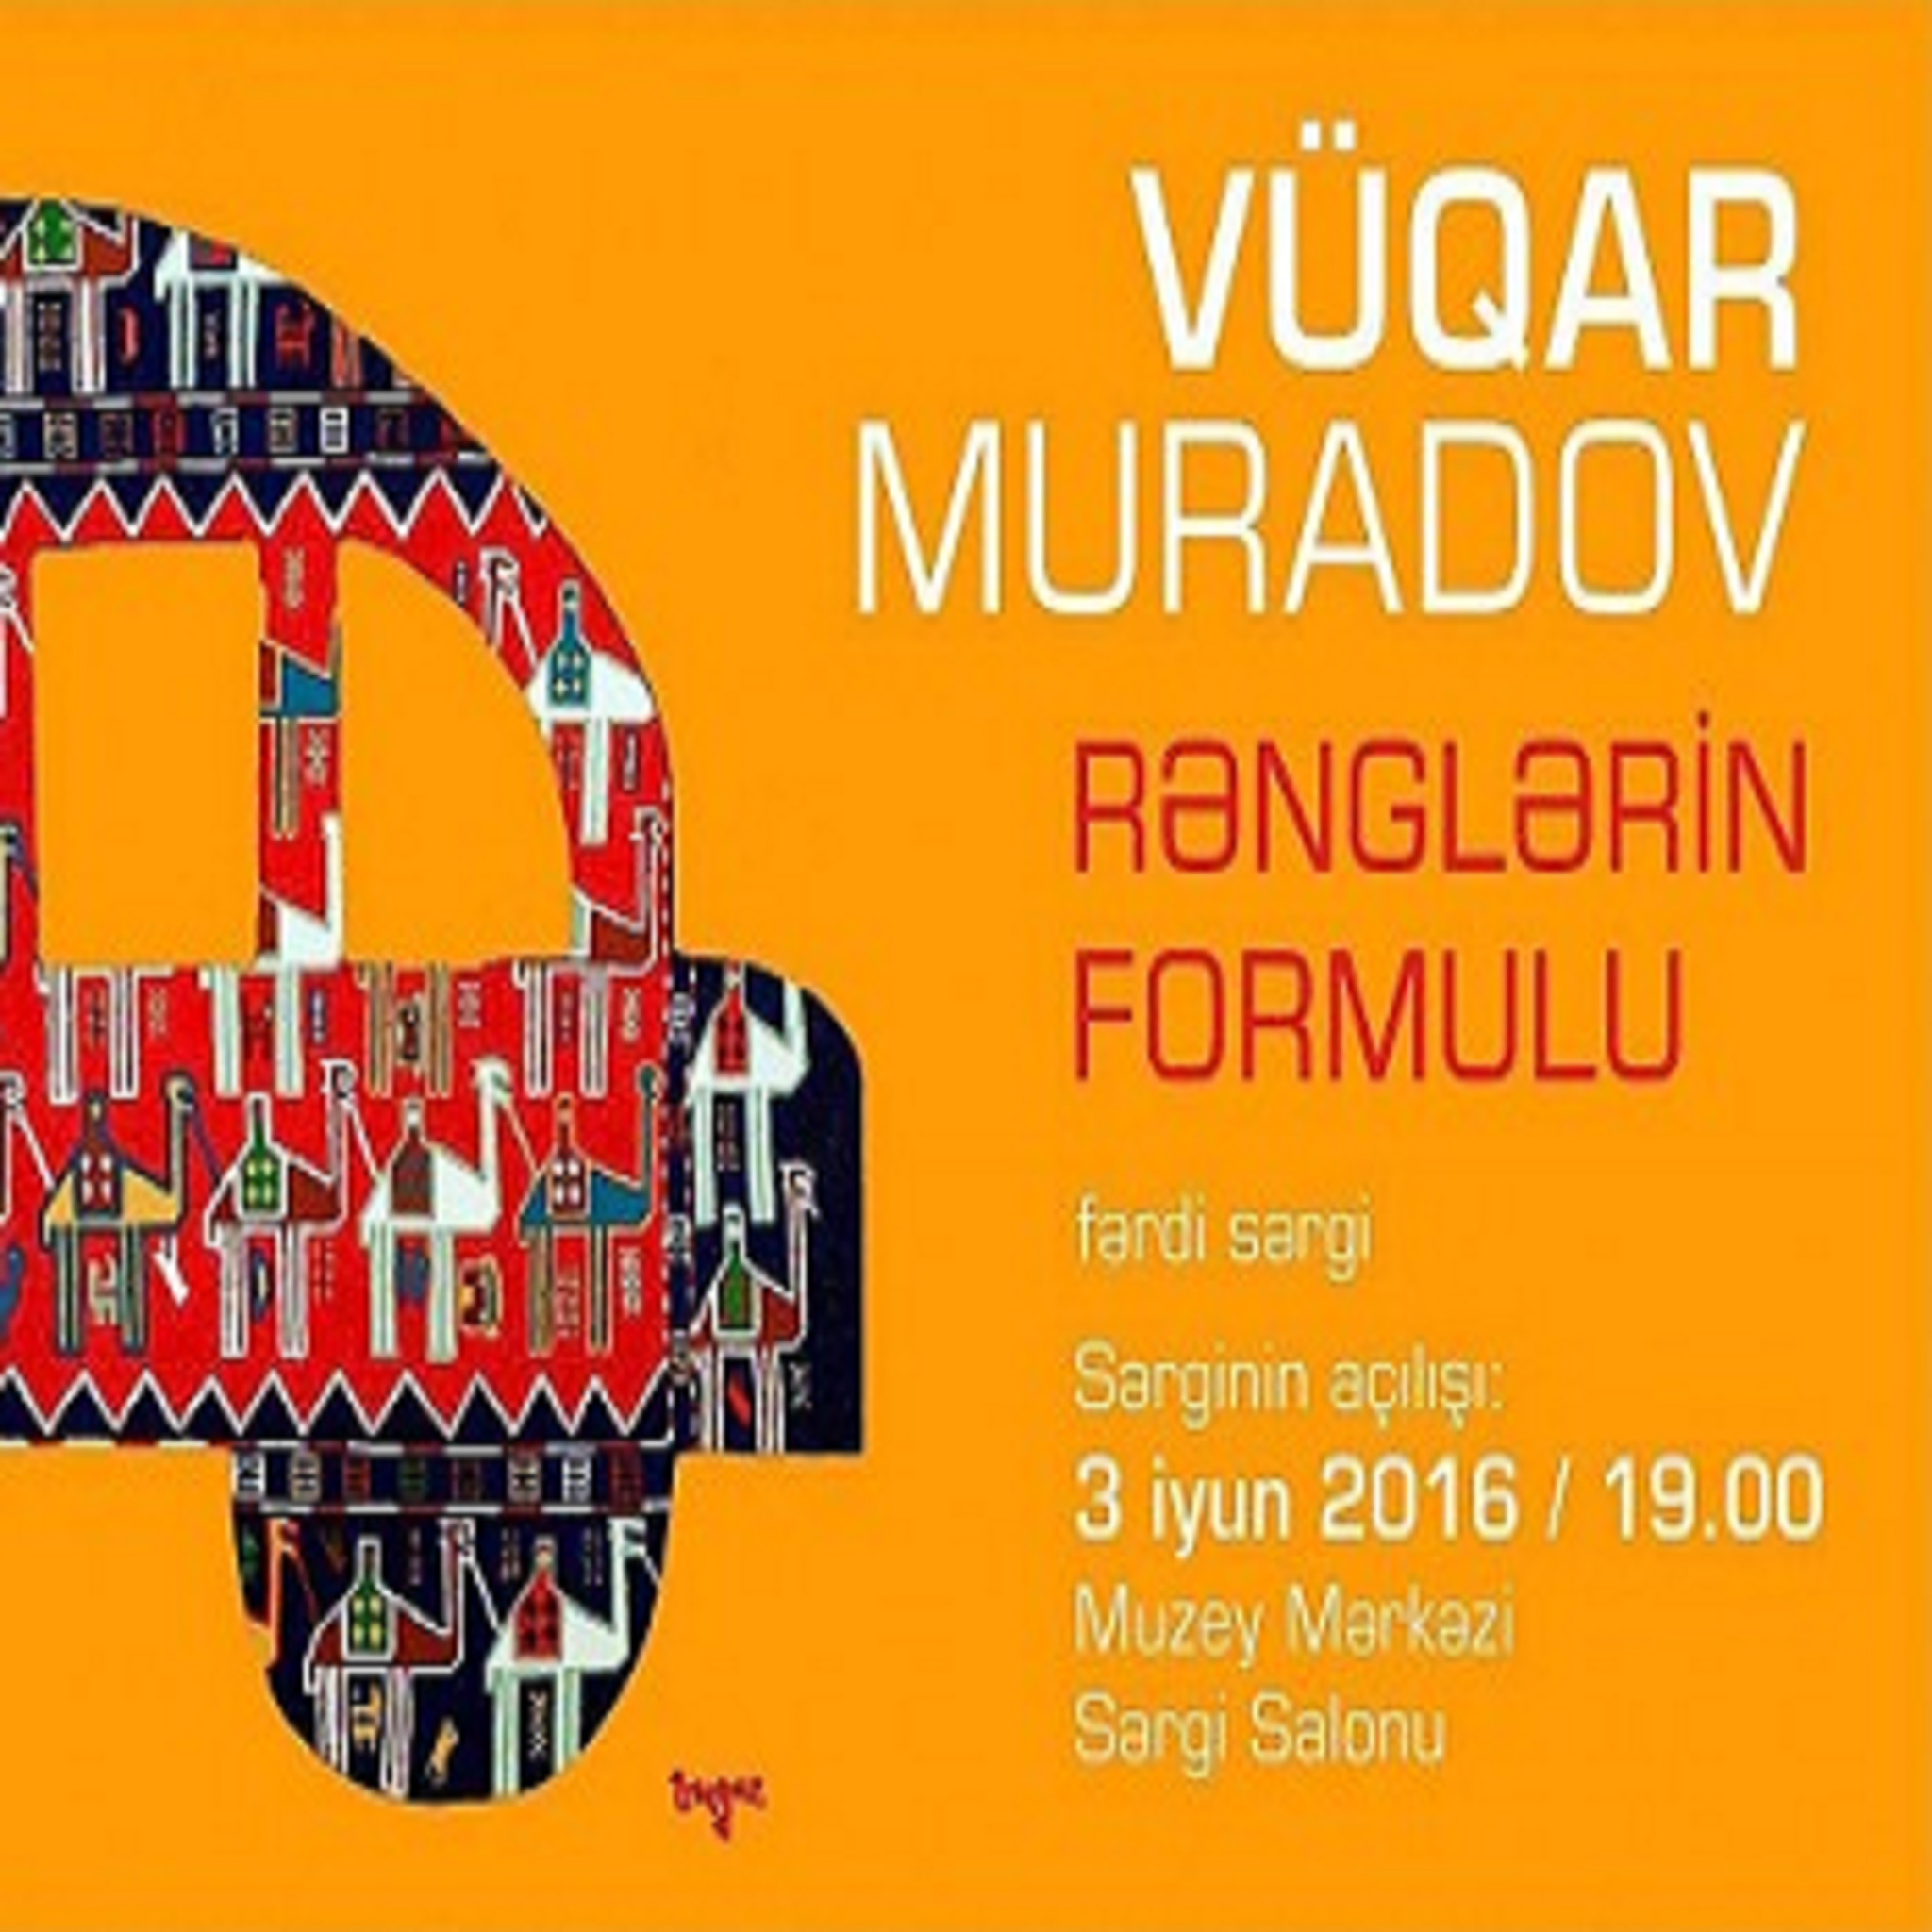 Exhibition of Vugar Muradov Formula Colours